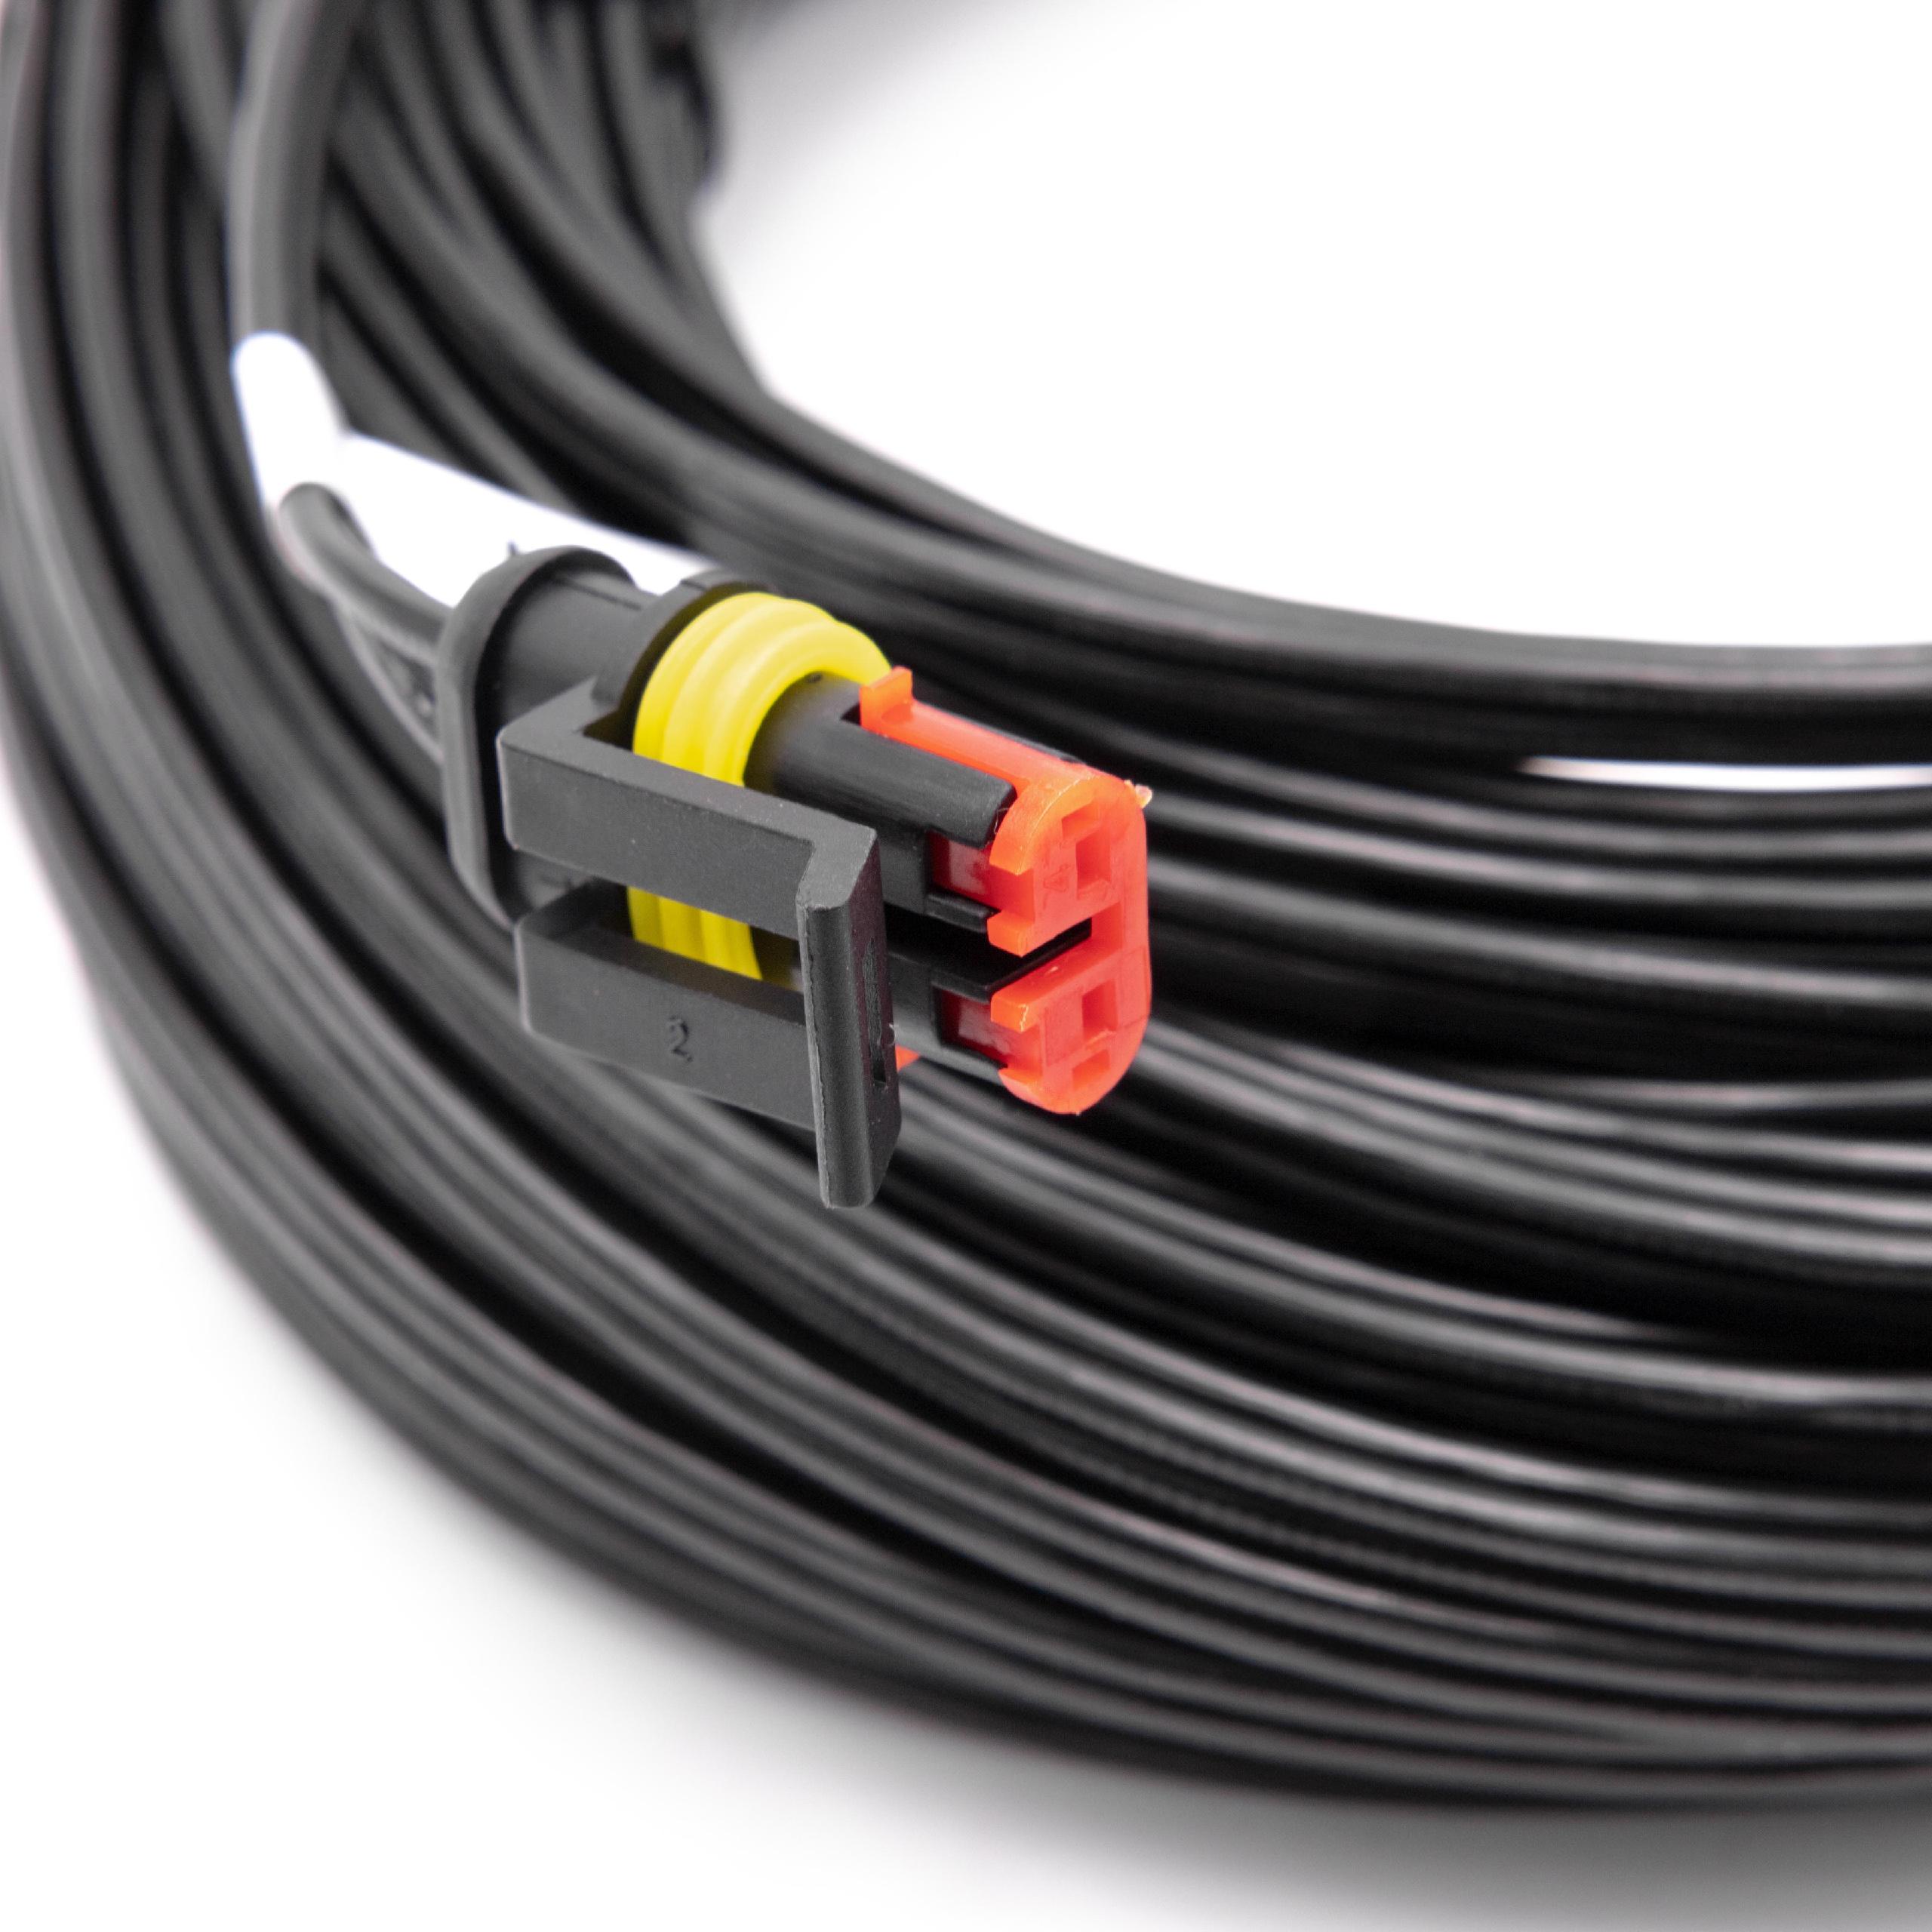 Przewód niskiego napięcia zamiennik Honda 31786-VP7-013 - kabel niskonapięciowy 20 m